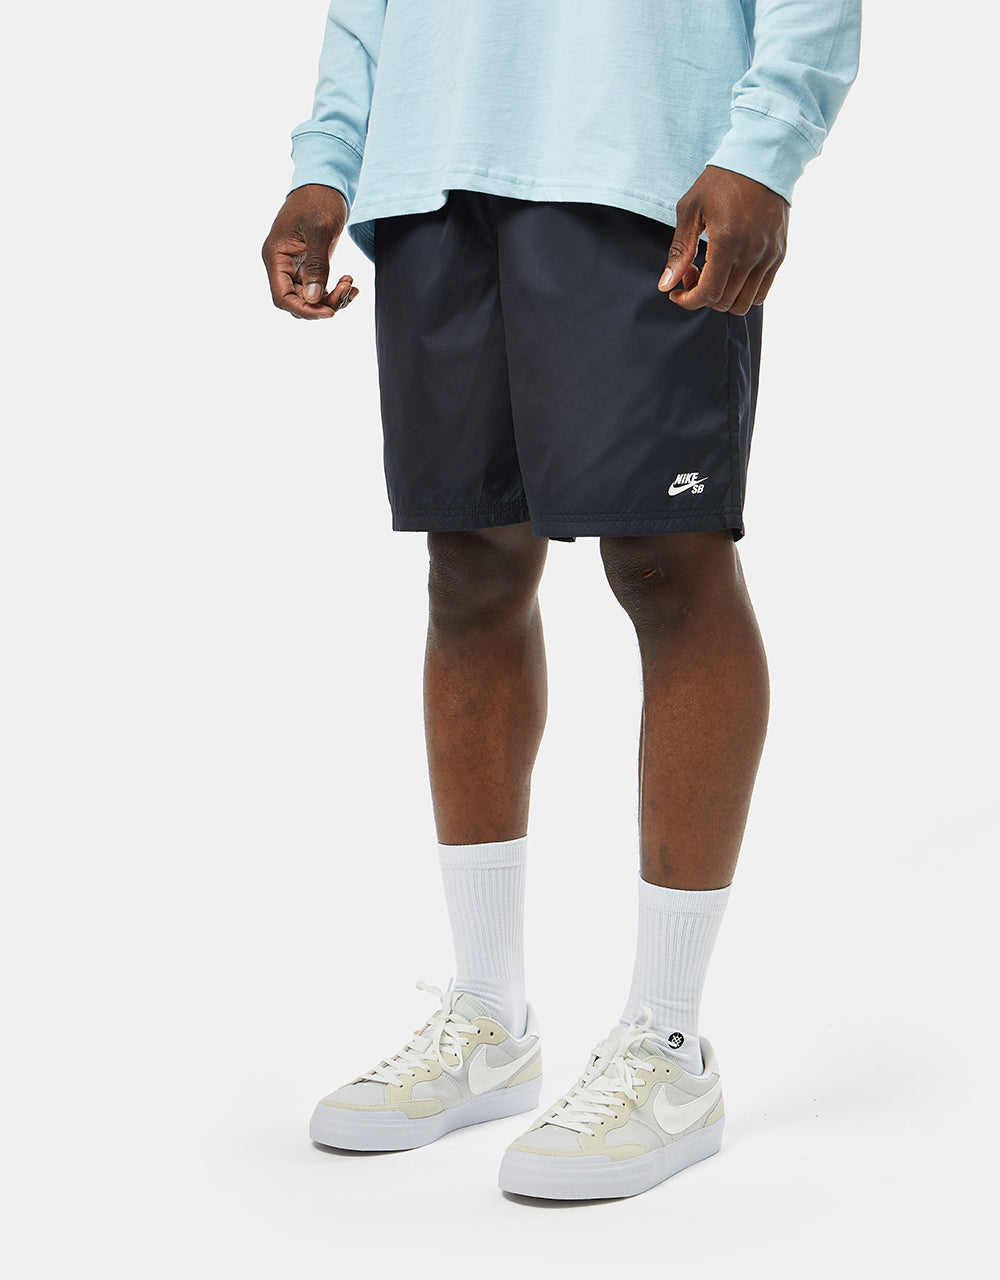 Nike SB Novelty Chino Short - Black/White